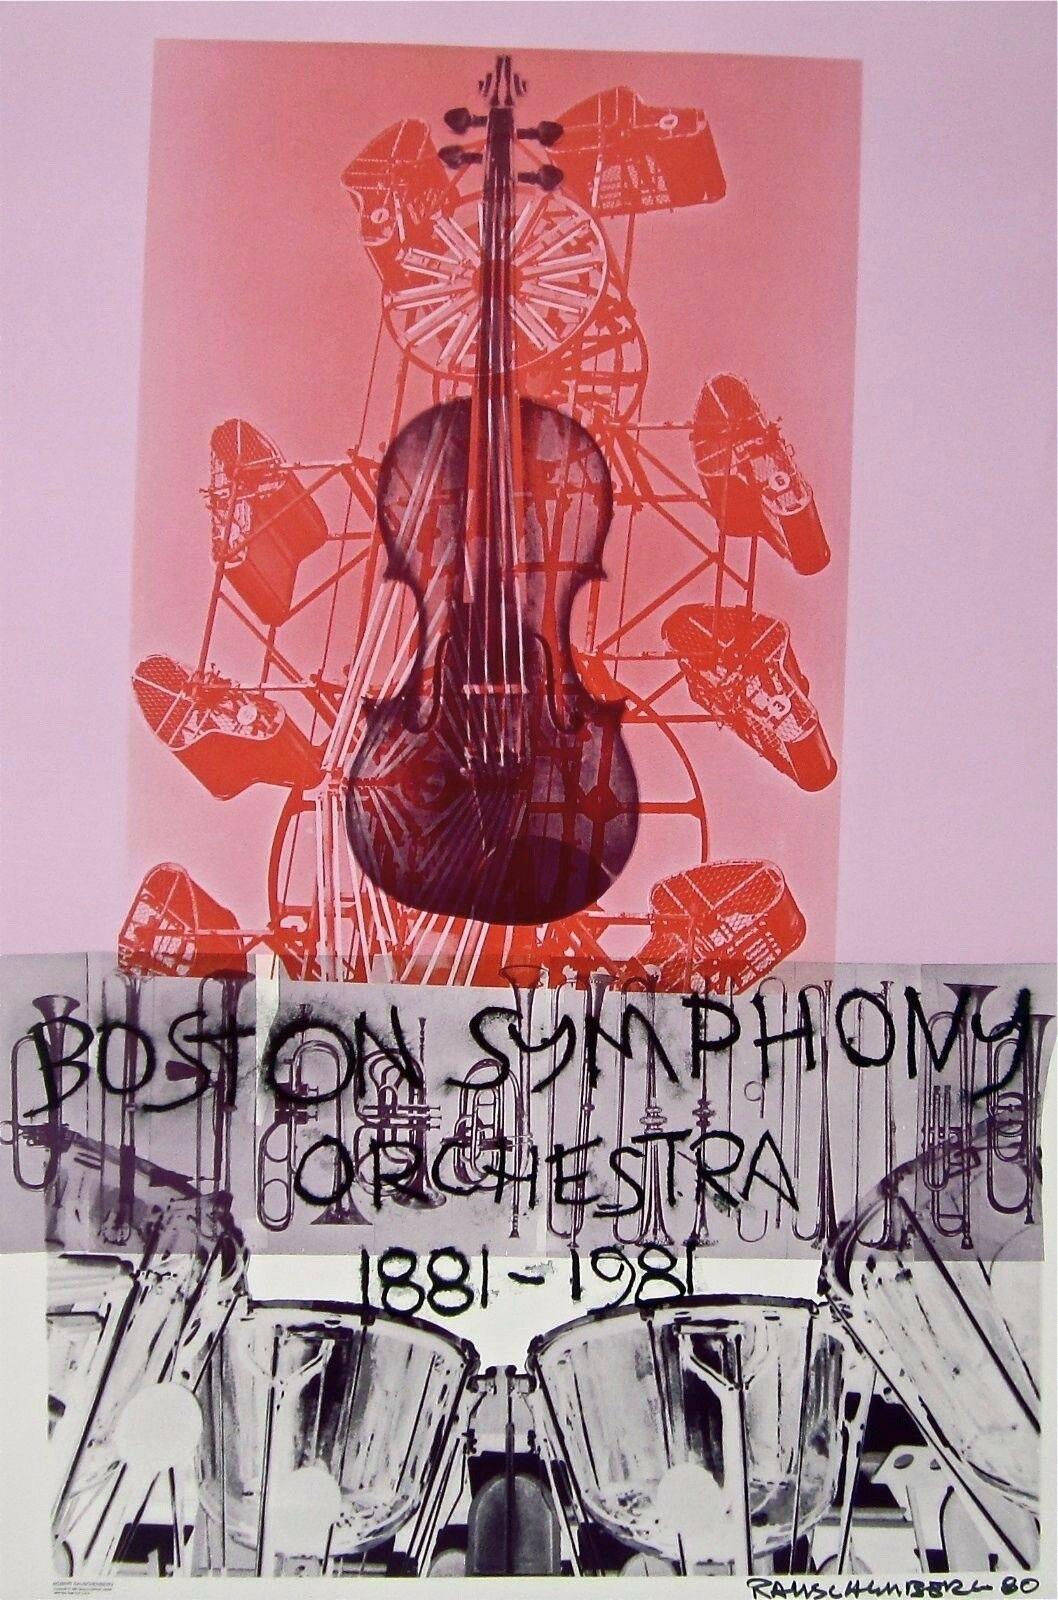 Robert Rauschenberg Abstract Print - Boston Symphony, 1980 Centennial Exhibition Poster